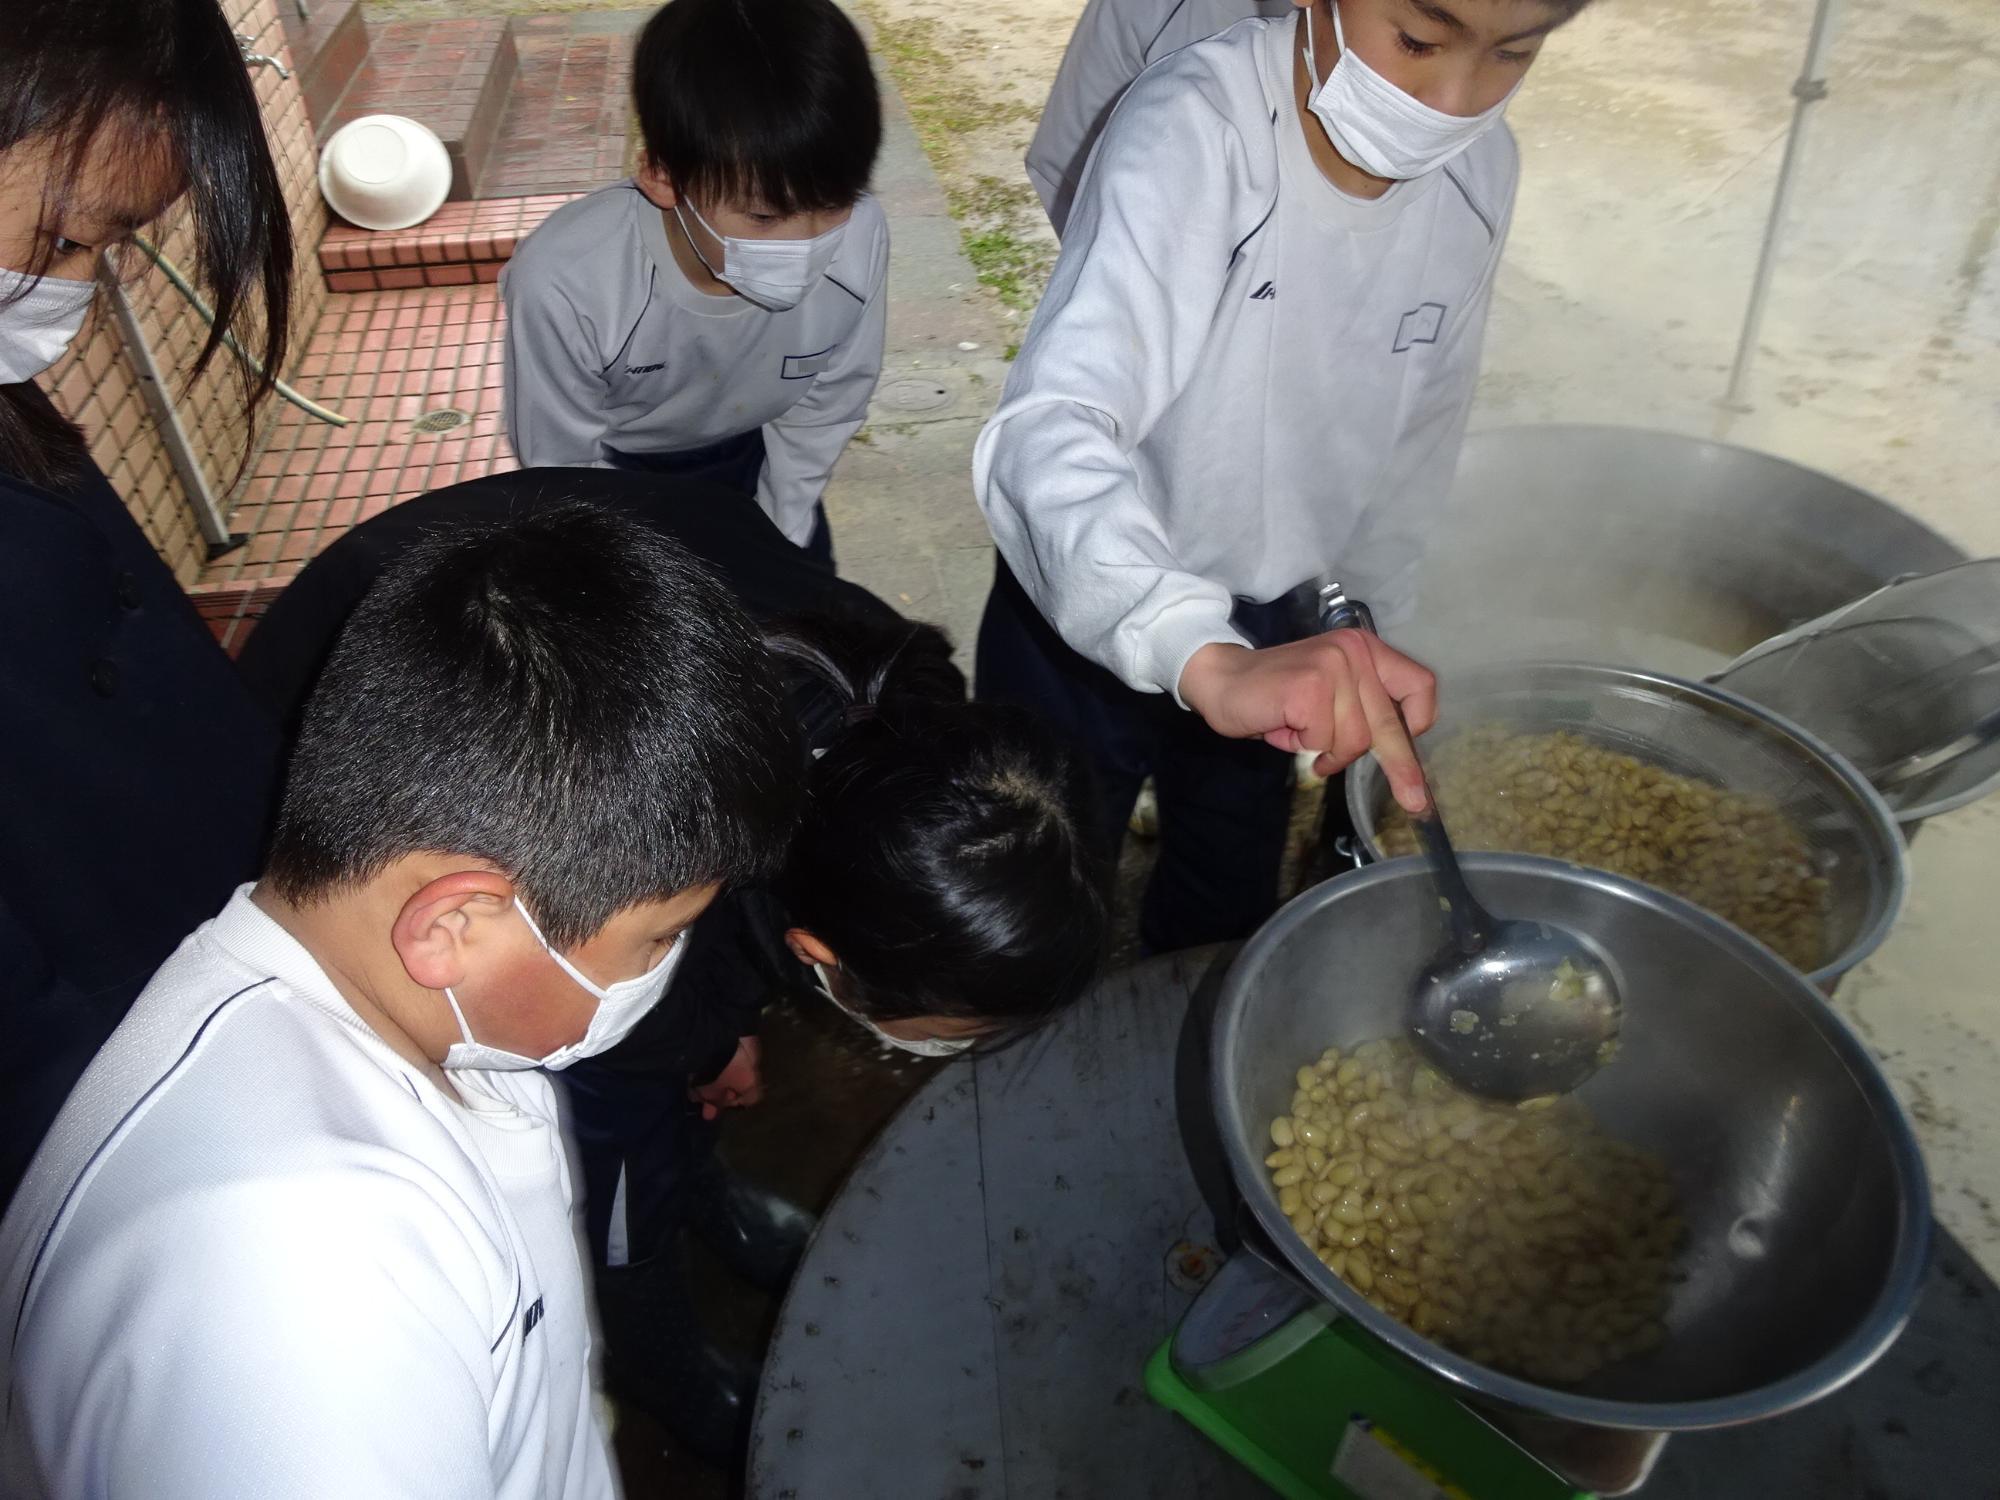 煮込んだ大豆を鍋からお玉ですくって秤の上に置かれたボウルに移し、大豆の重量を計っている児童とその周りで重量を注意深く見ている児童たちの写真